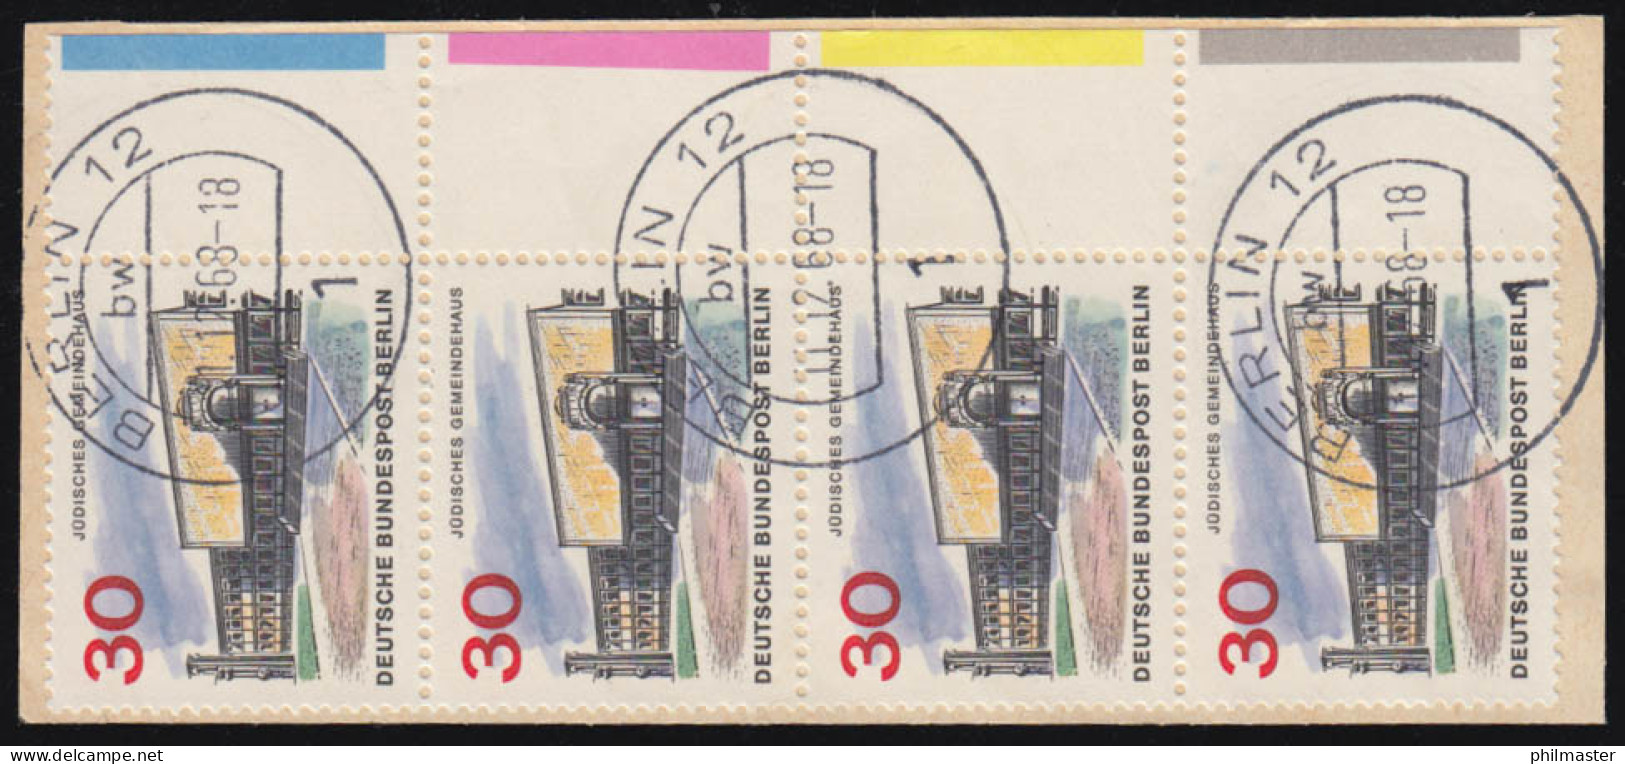 257 Das Neue Berlin Als Farbrand-Viererstreifen Auf Briefstück BERLIN 11.12.63 - Used Stamps